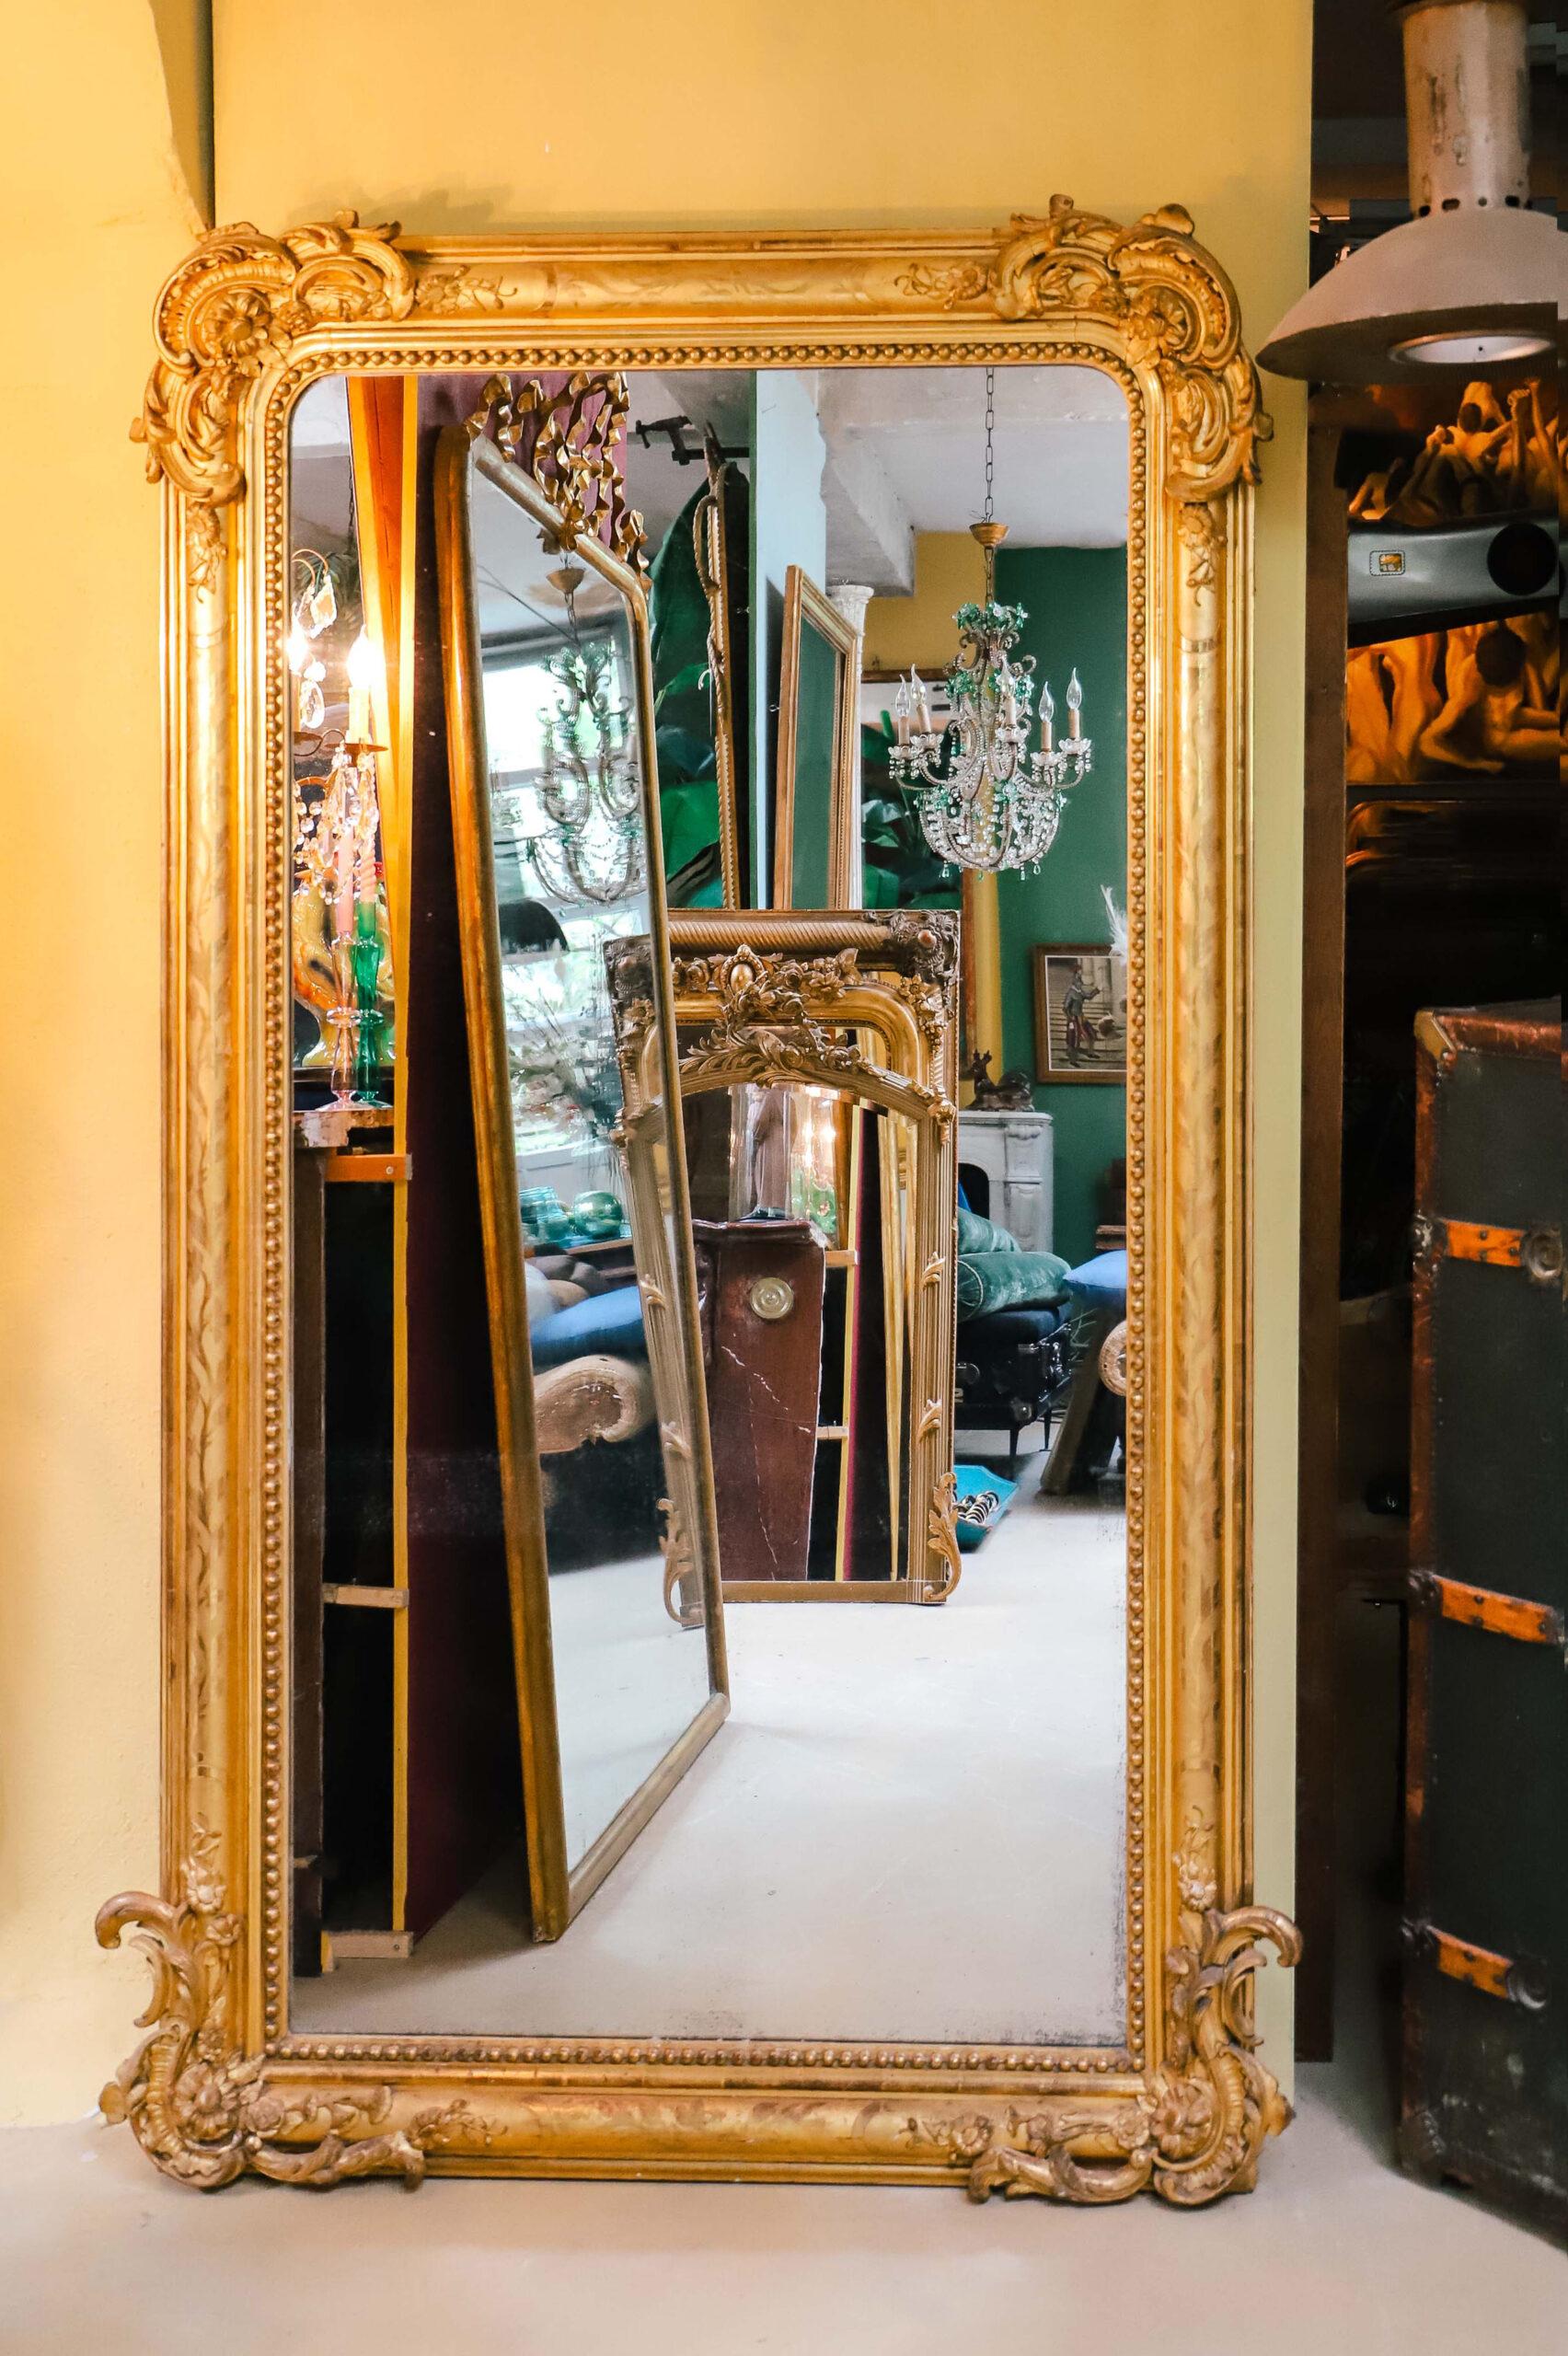 Tauchen Sie ein in die Grandeur dieses atemberaubenden antiken französischen Spiegels im Louis-Philippe-Stil des 19. Jahrhunderts, der vergoldet ist. Der reich verzierte Rahmen weist sowohl an der oberen als auch an der unteren Ecke aufwändige